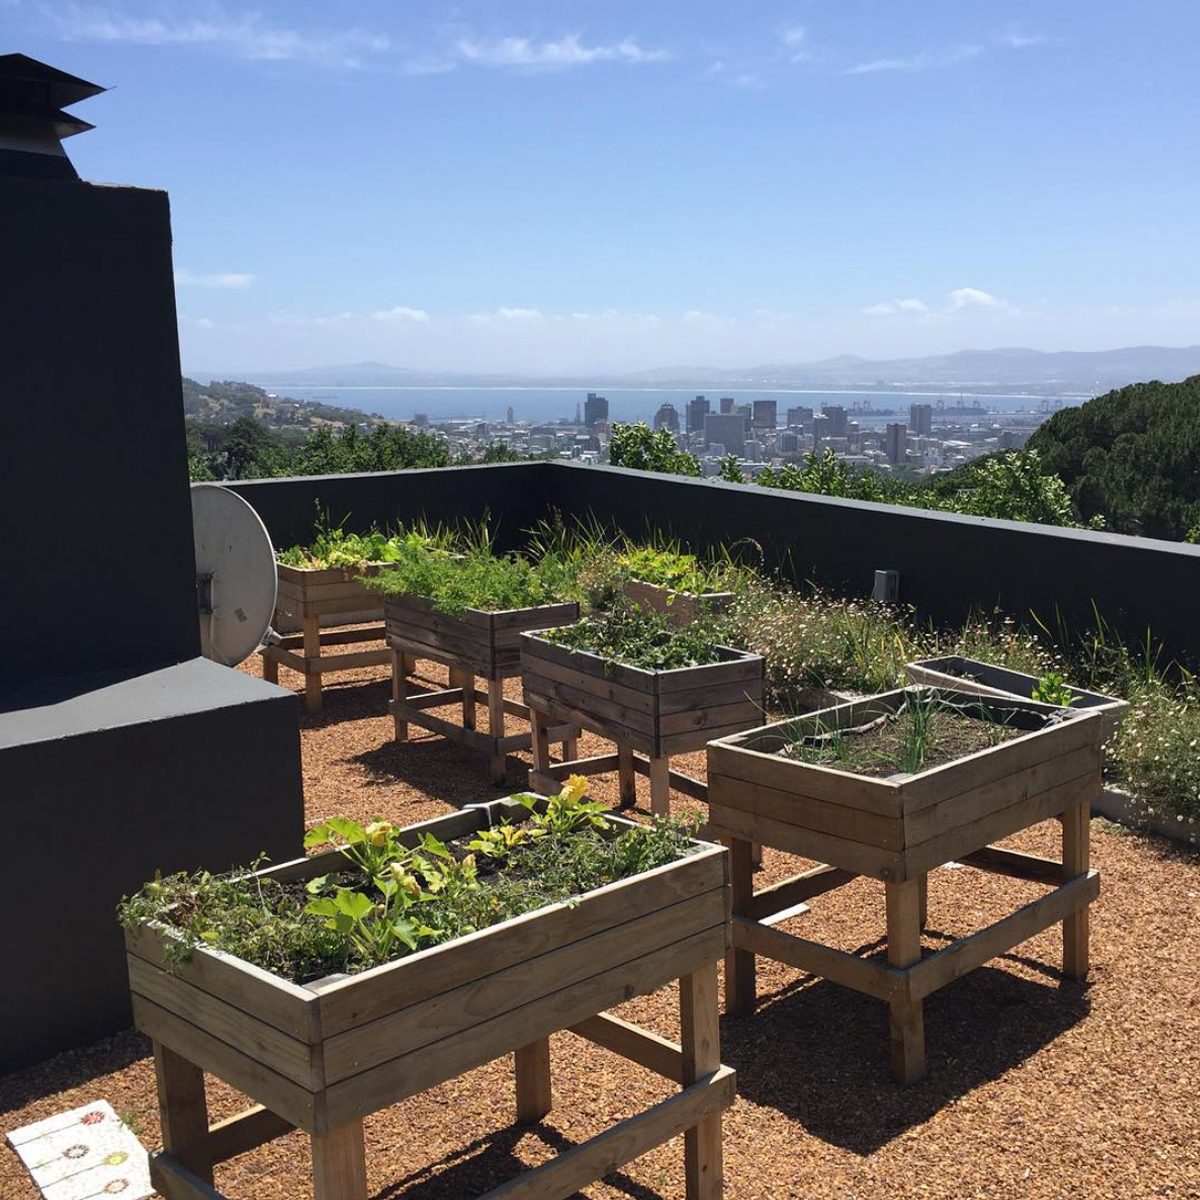 Vegetable Garden Ideas – Forbes Home